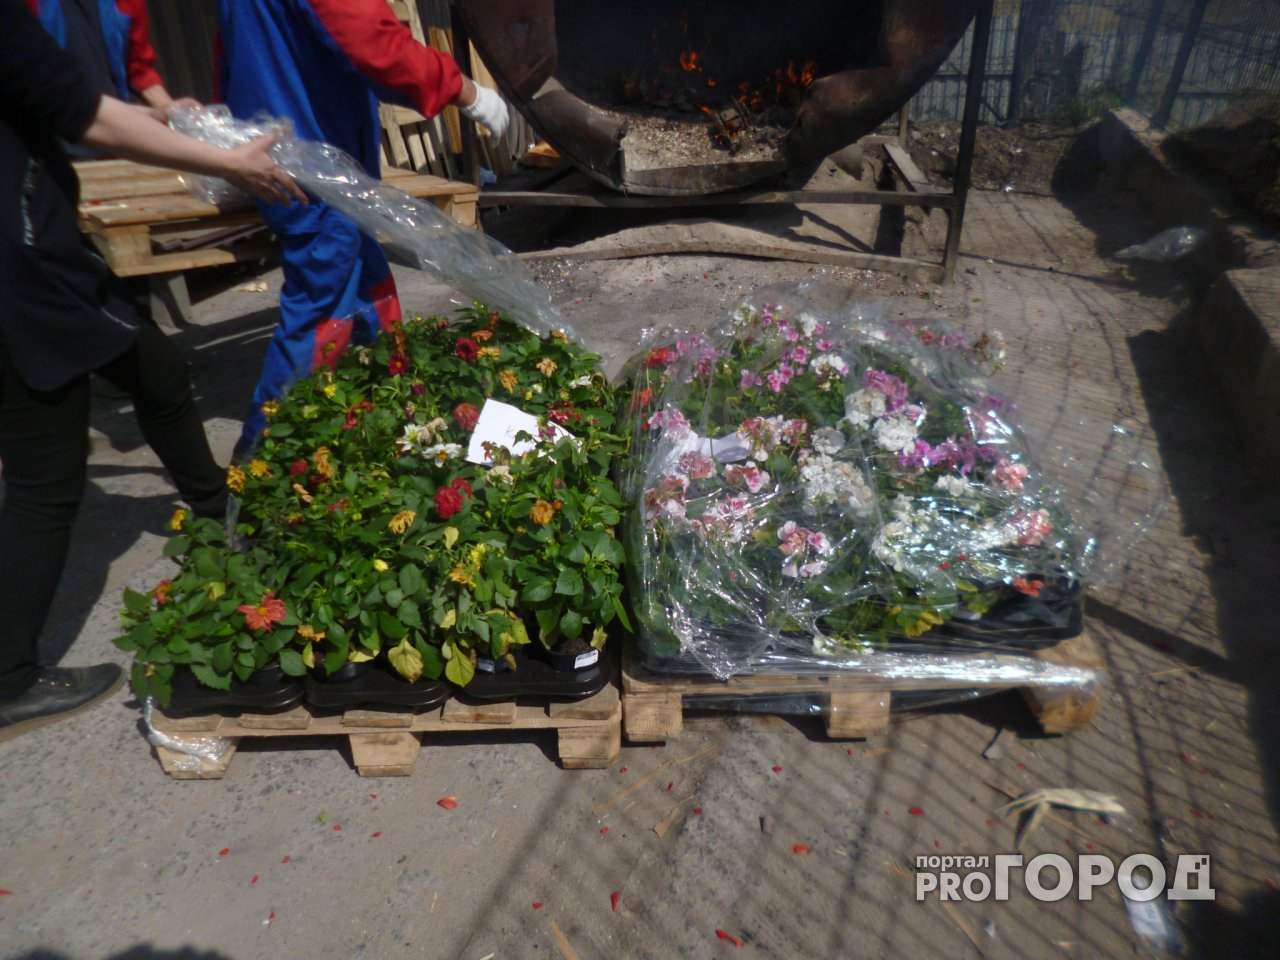 Вирус в цветах: в Ярославле сожгли опасную рассаду